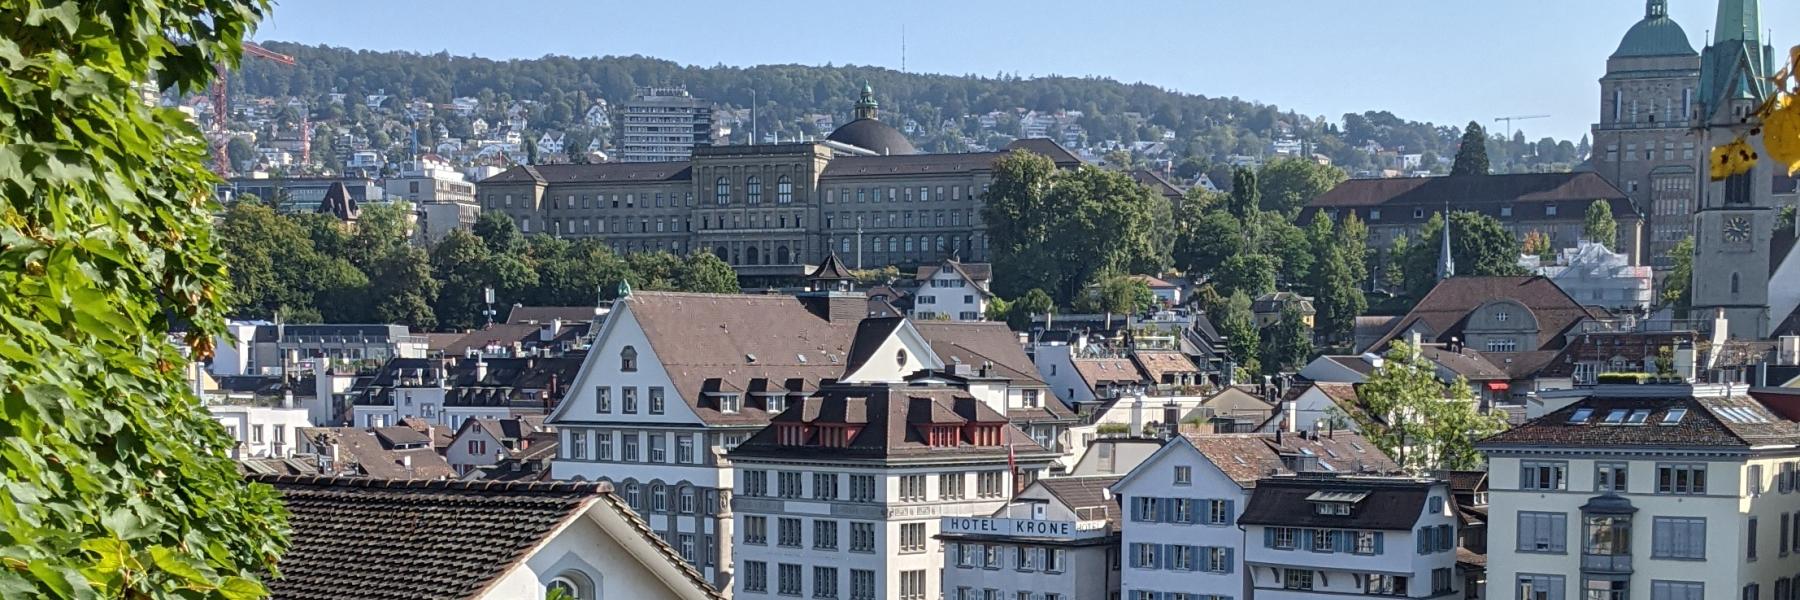 Zurich i efteråret 2021